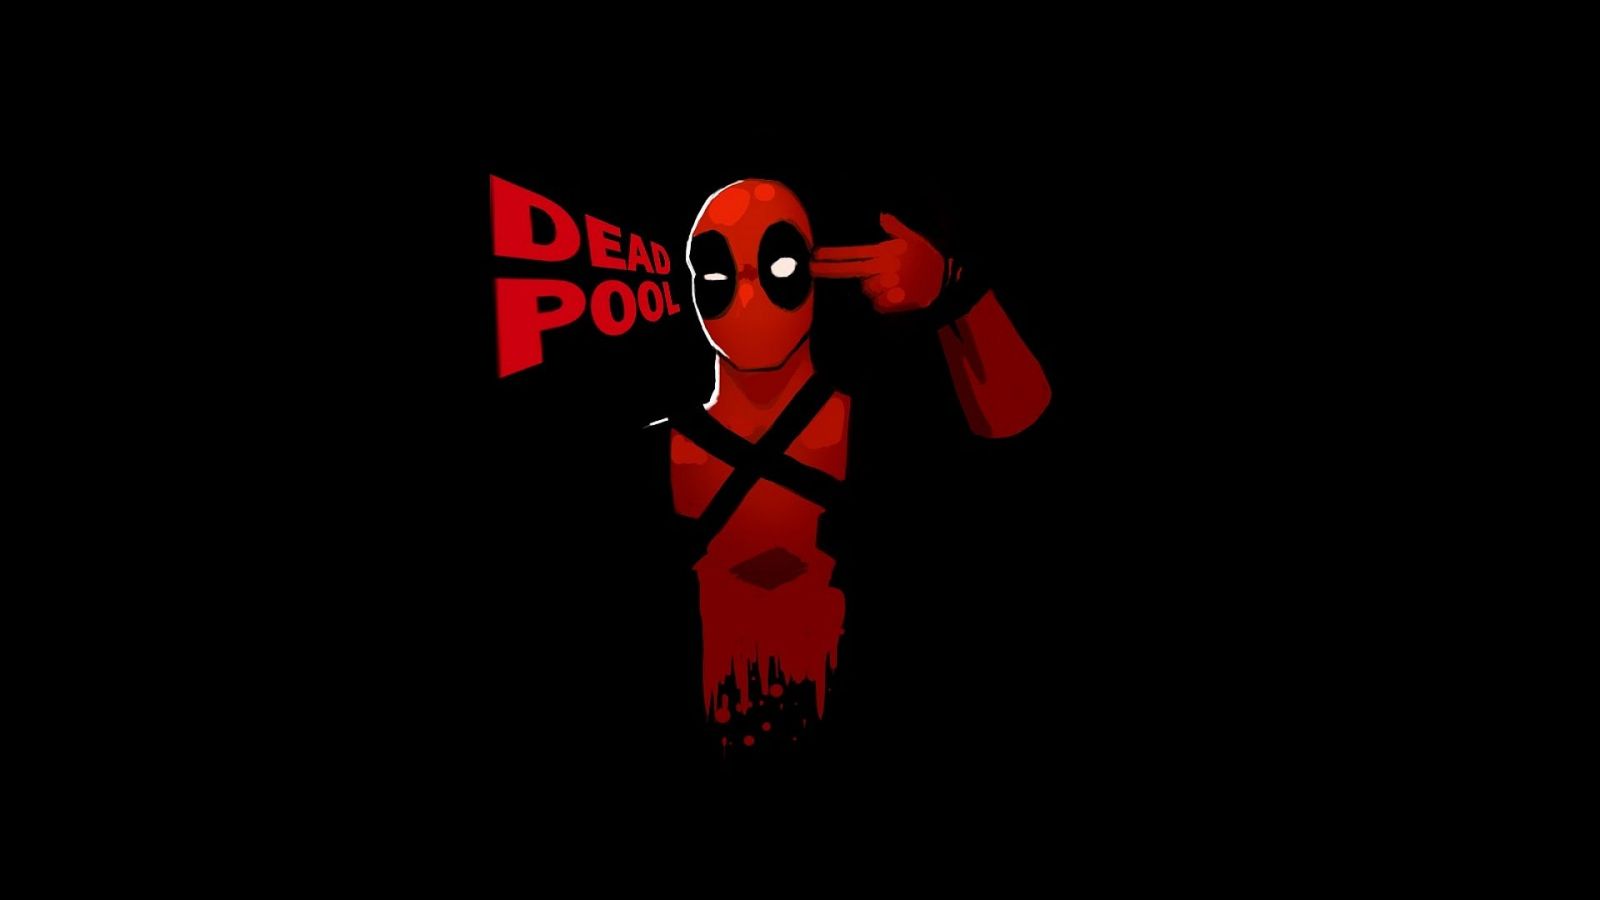 Free download Deadpool Wallpaper Wide Deadpool logo wallpaper Deadpool HD [1920x1080] for your Desktop, Mobile & Tablet. Explore Deadpool HD Wallpaper. Deadpool Wallpaper Hd, Deadpool HD Wallpaper, 900x480 HD Wallpaper Deadpool